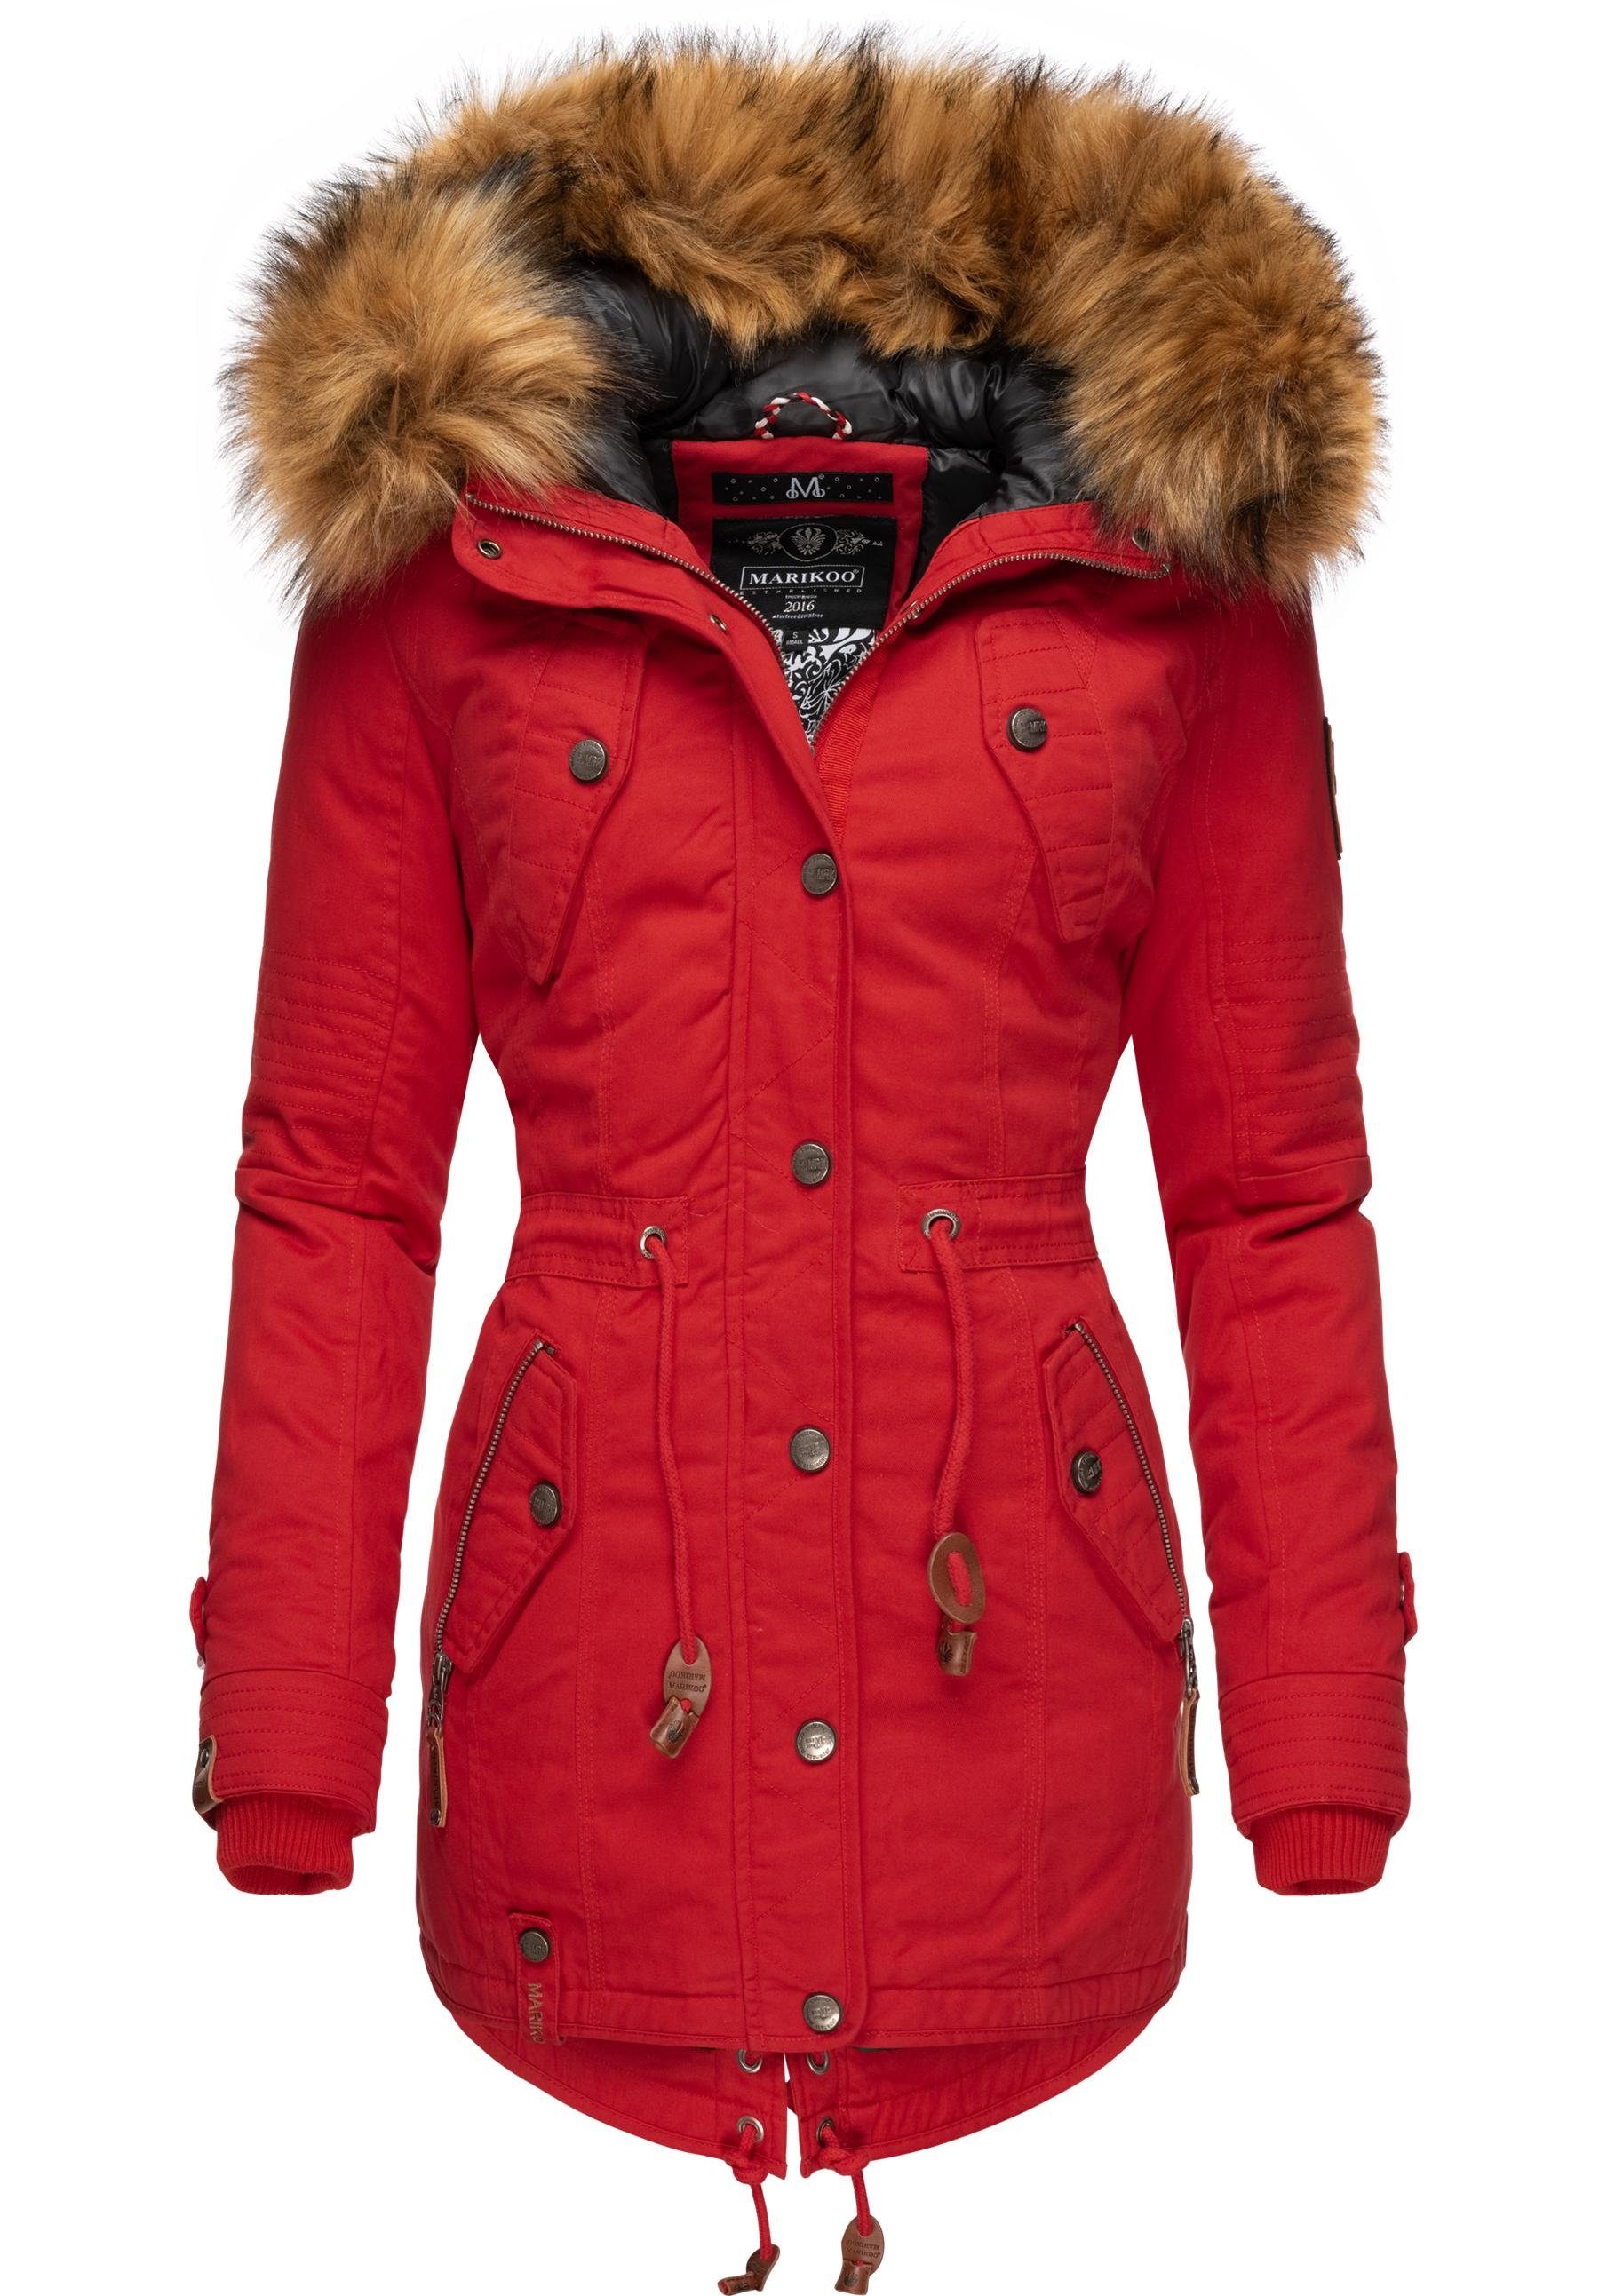 Top-Verkaufstraining Marikoo Wintermantel Viva Prc Kunstfell La Winterparka abnehmbarem rot mit stylischer